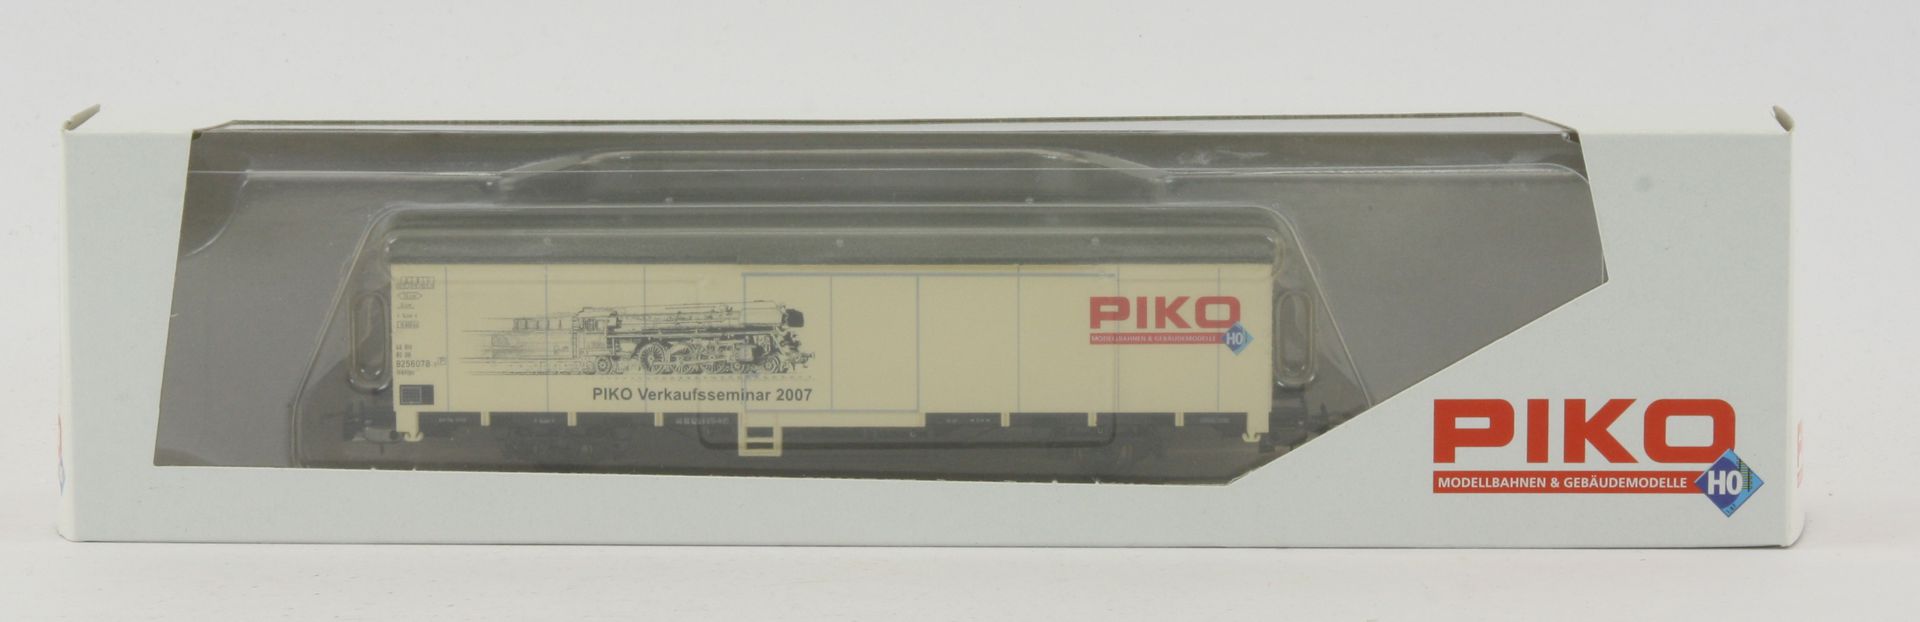 Piko 72022-G - Wagen zum Verkaufsseminar 2007